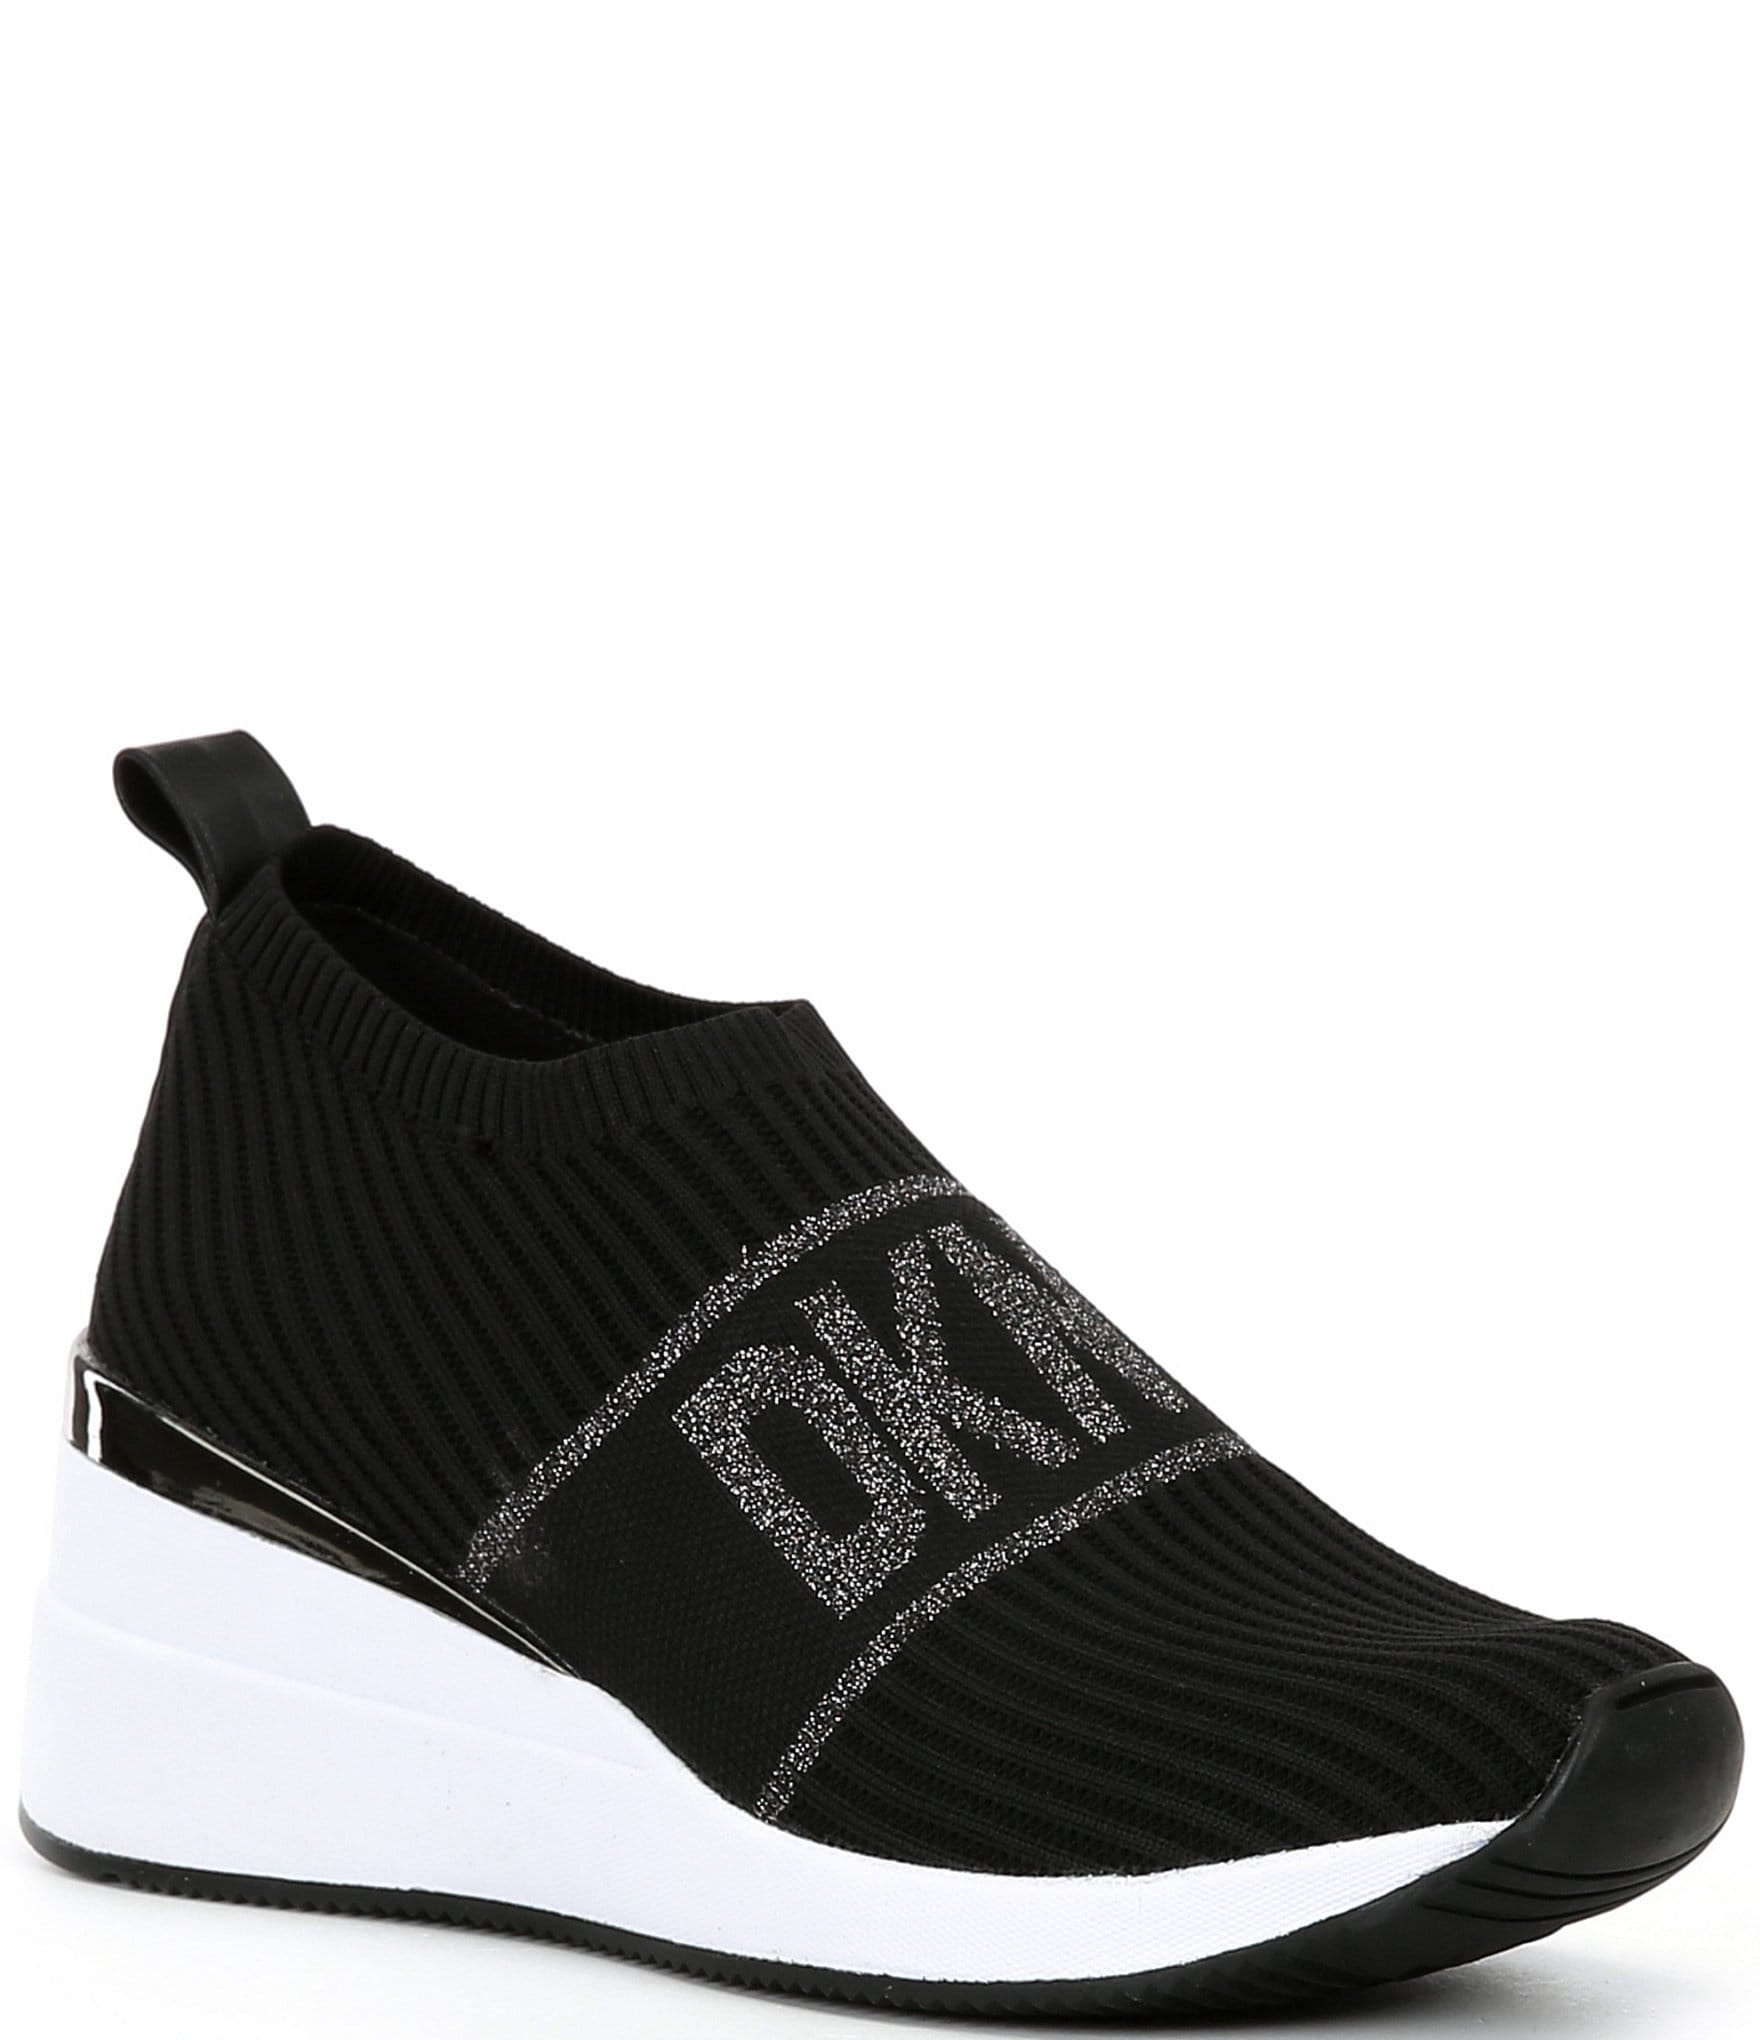 DKNY Phebe Slip On Wedge Sneakers | Dillard's